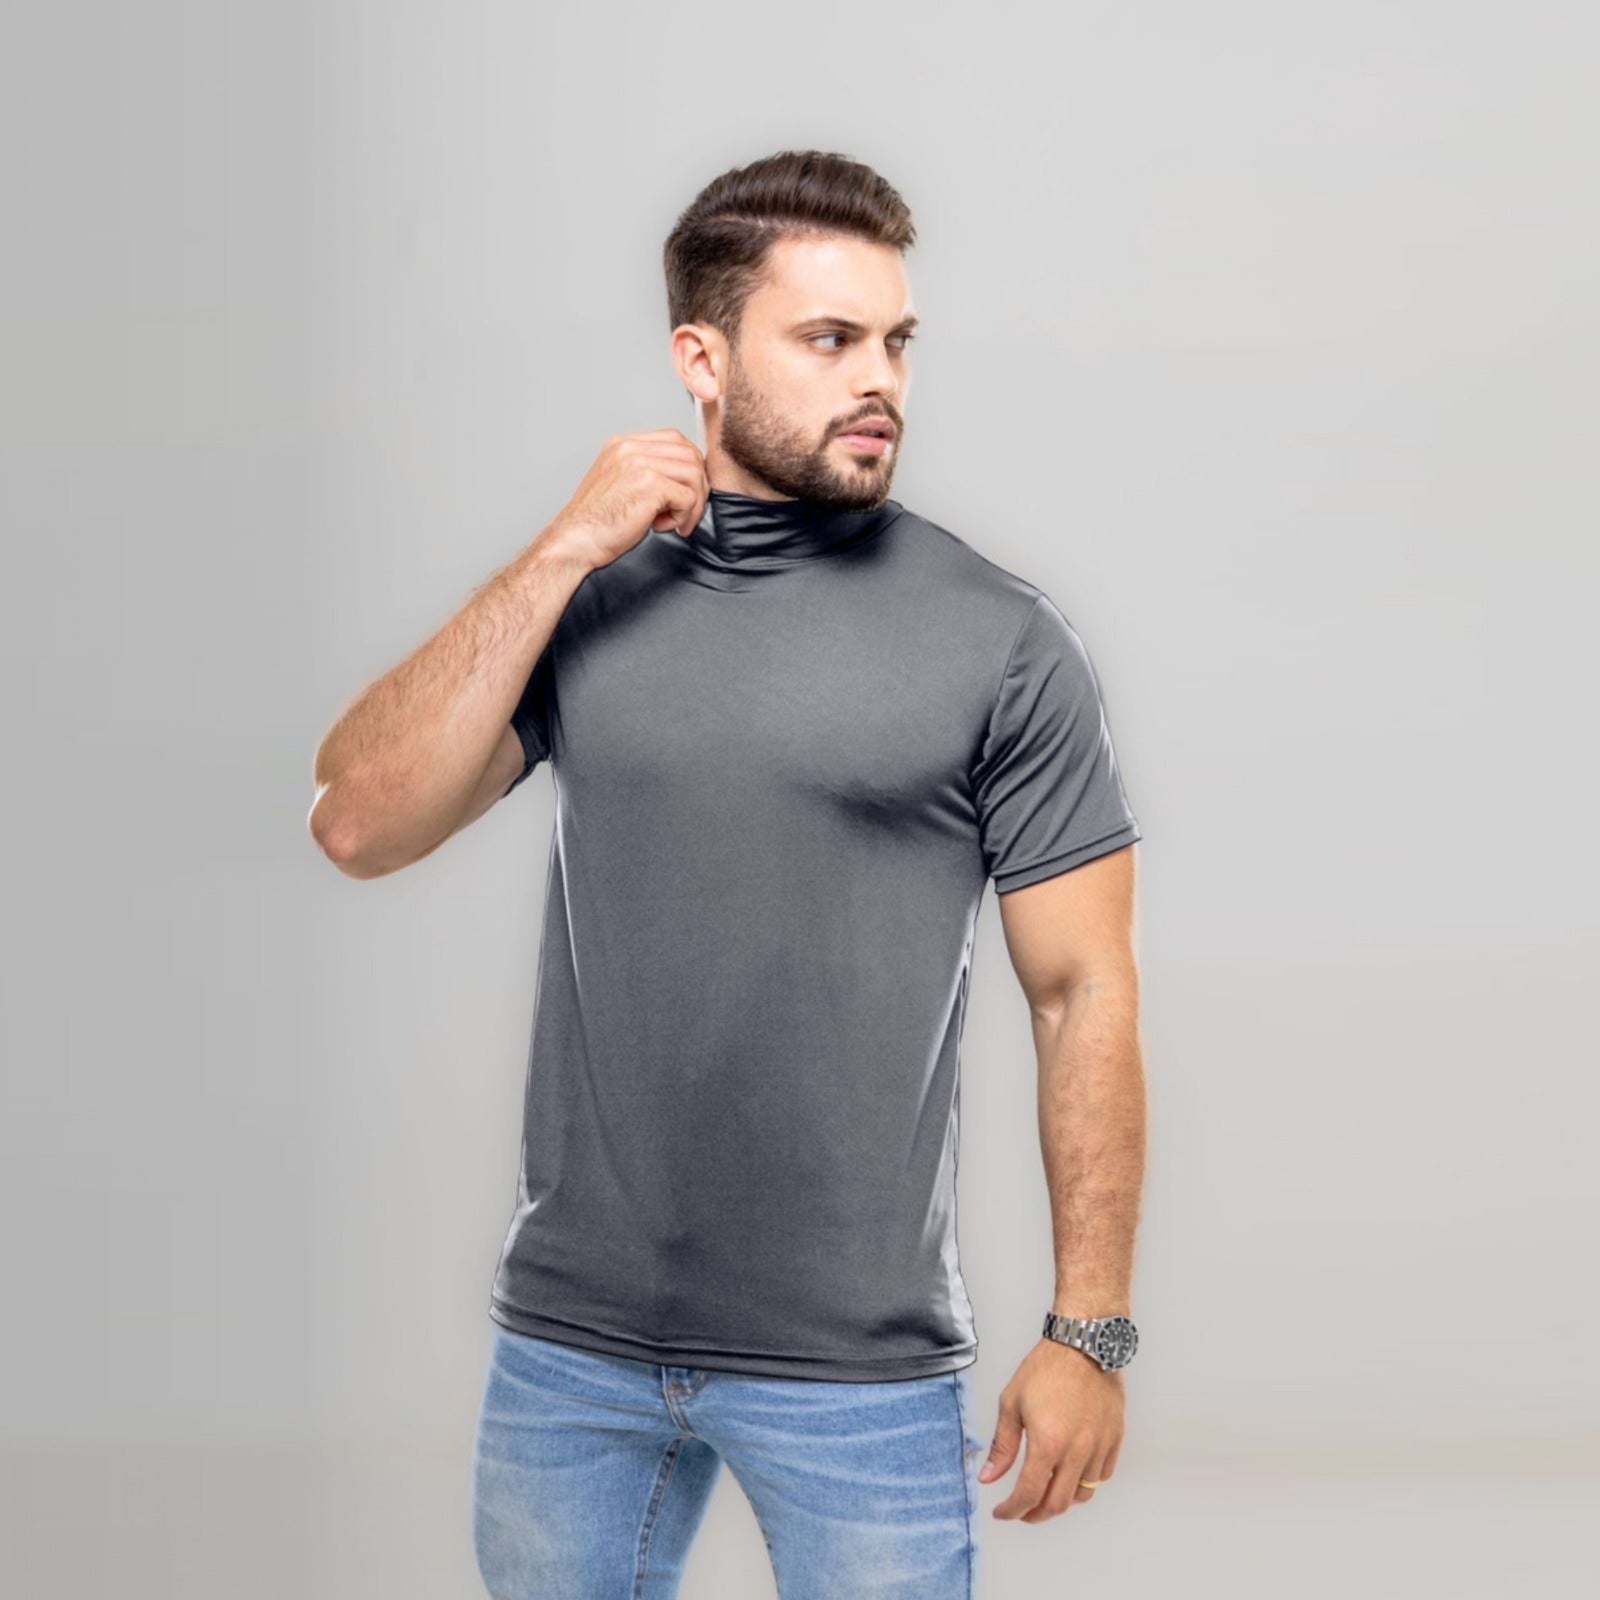 Camiseta Curta Gola Alta Proteção Solar 50+ cinza